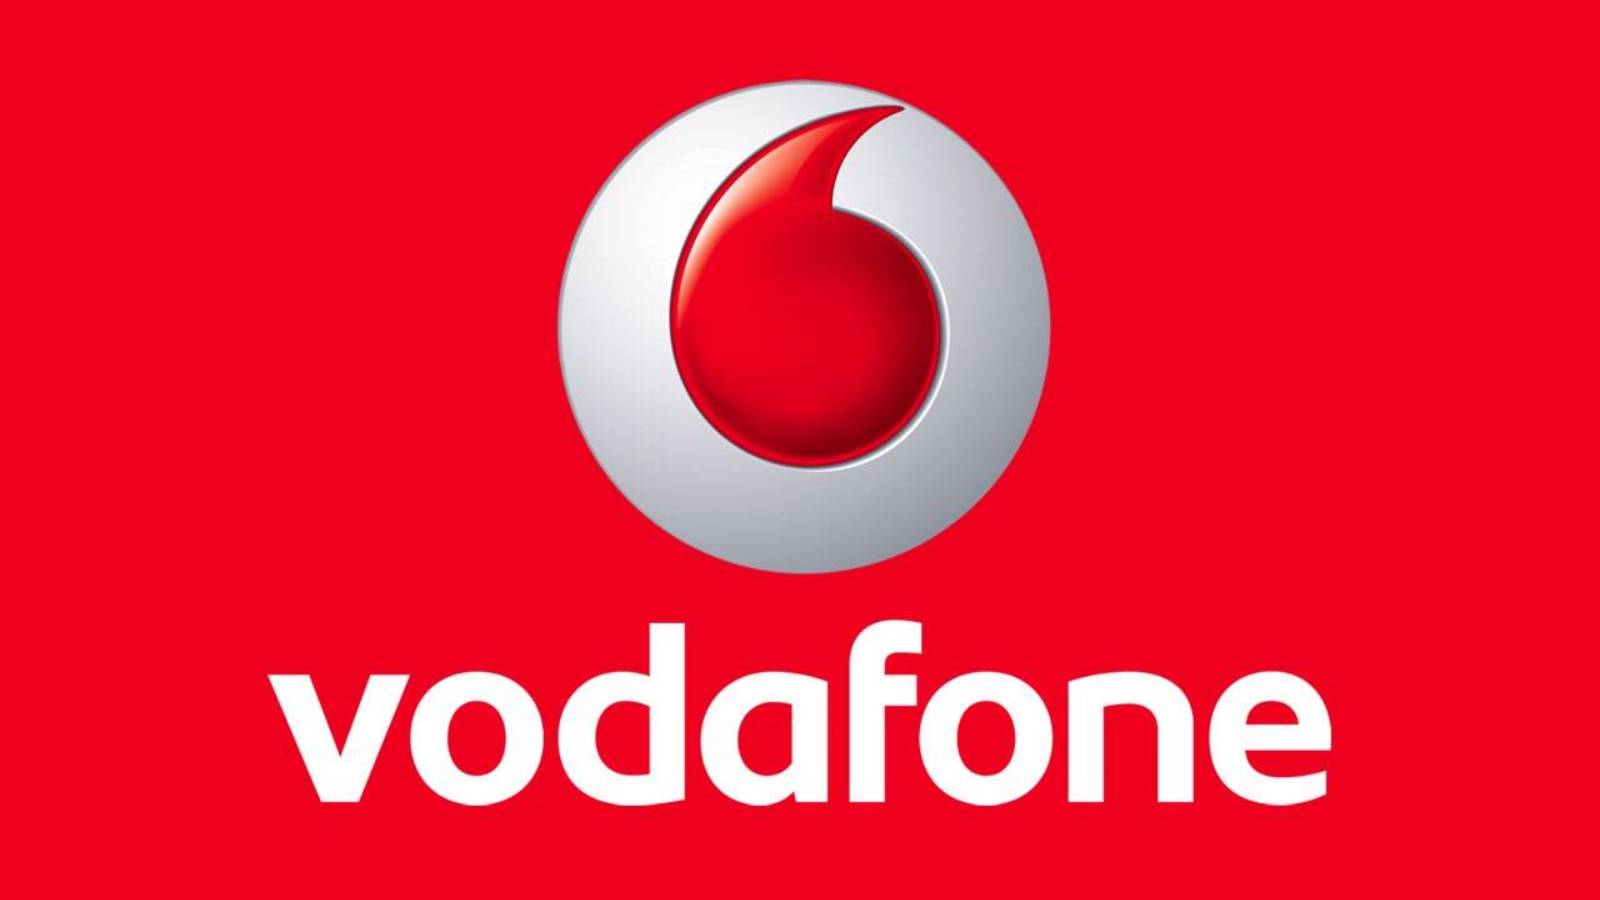 Jetzt offizielle KOSTENLOSE Nachricht von Vodafone an jedes rumänische Land